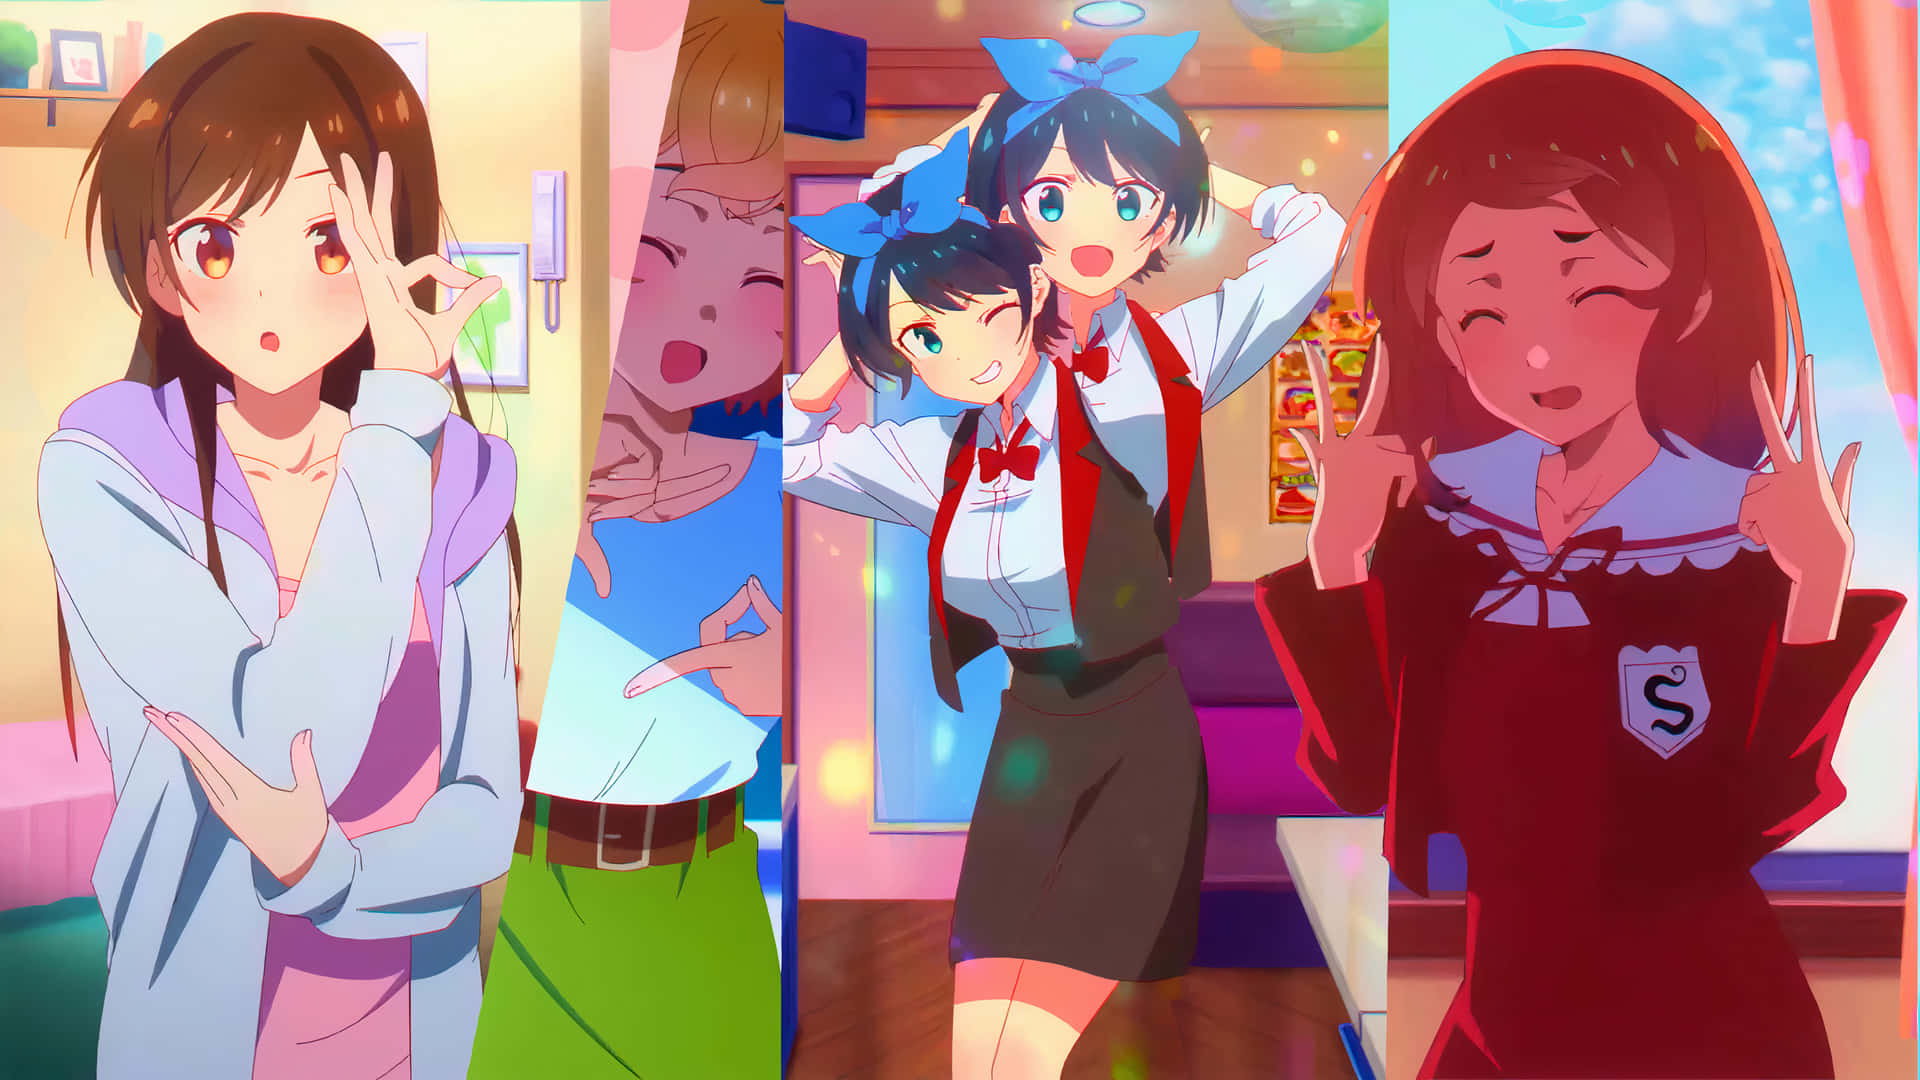 Anime piger i forskellige stillinger Wallpaper